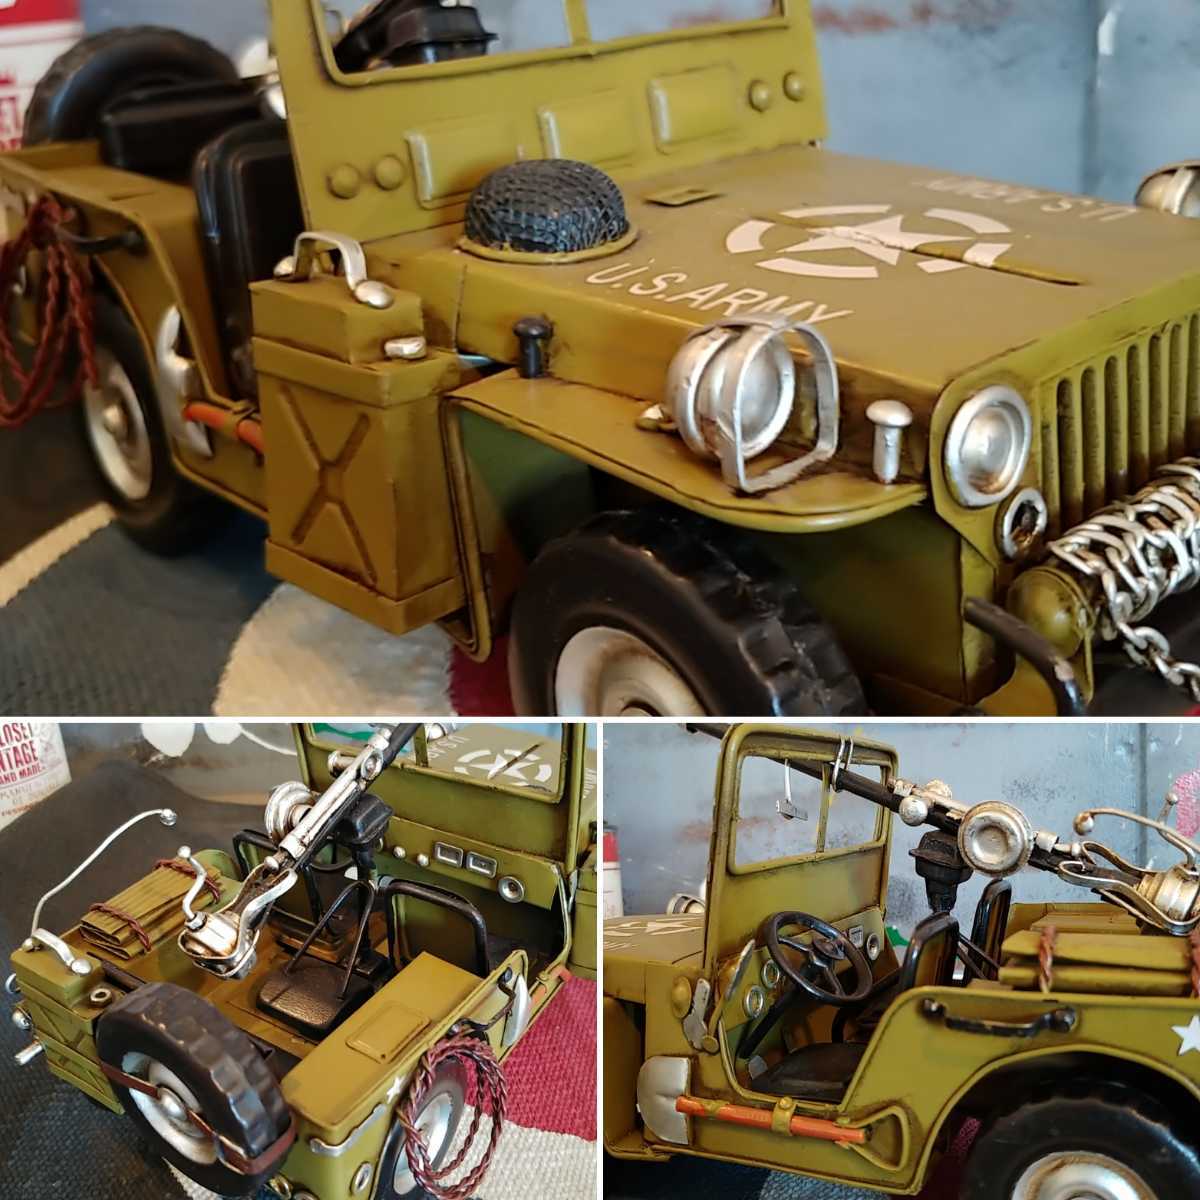  classic WILLYS MB модель ⑧ America суша армия Jeep Willis модель /U.S.ARMY JEEP(High Quality )# магазин инвентарь # интерьер оборудование орнамент # изобразительное искусство мелкие вещи 